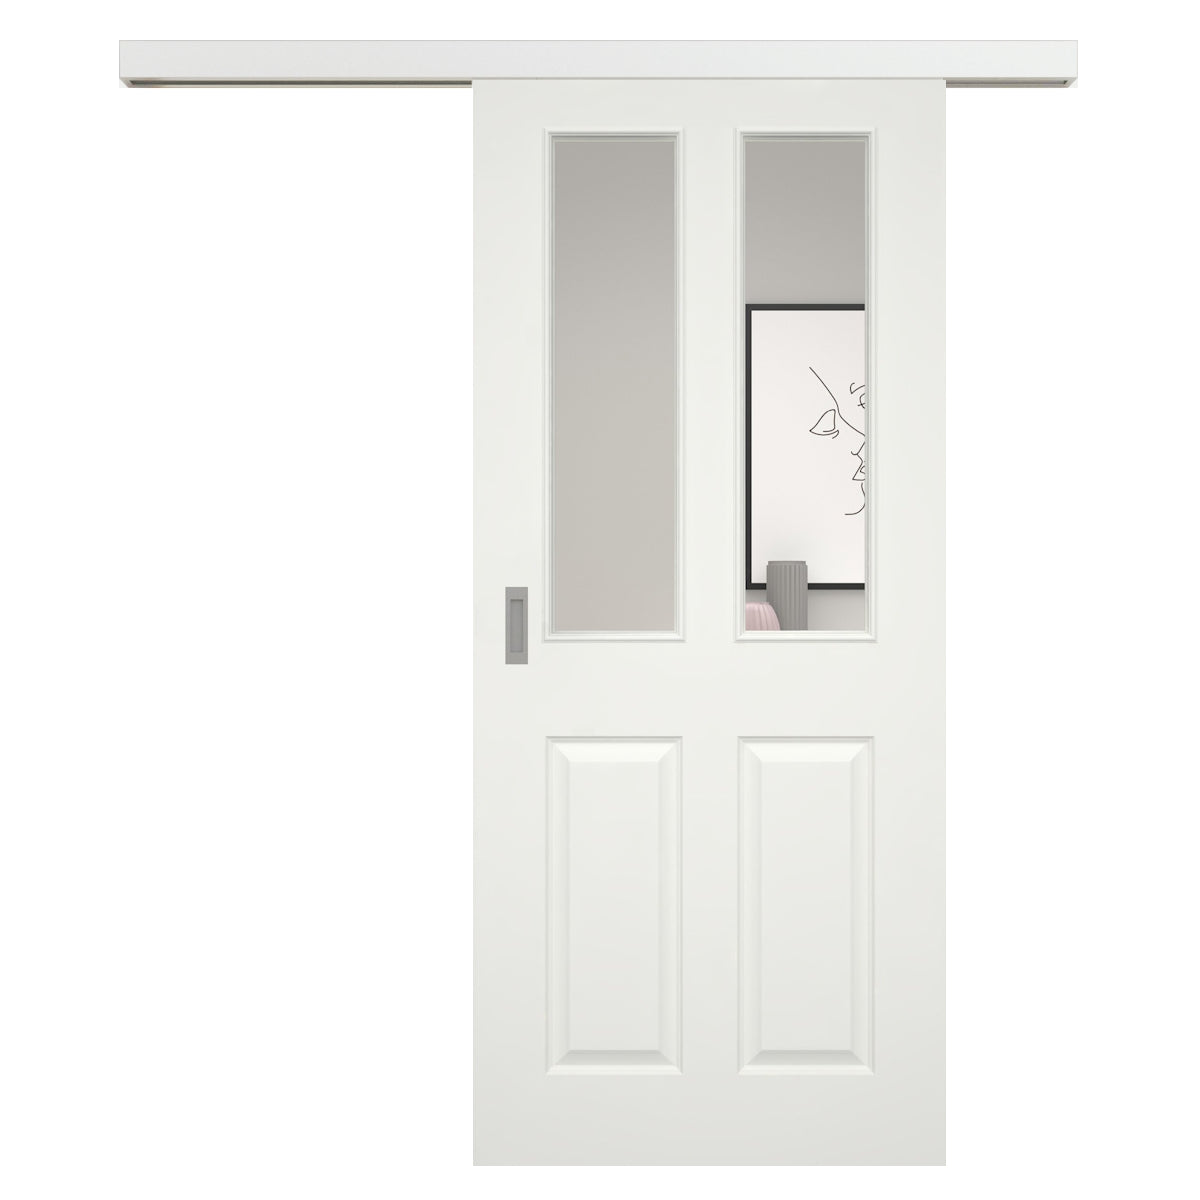 Schiebetür für Set mit weißem Laufkasten soft-weiß Stiltür mit 4 Kassetten und Lichtausschnitt - Modell Stiltür K41LA2